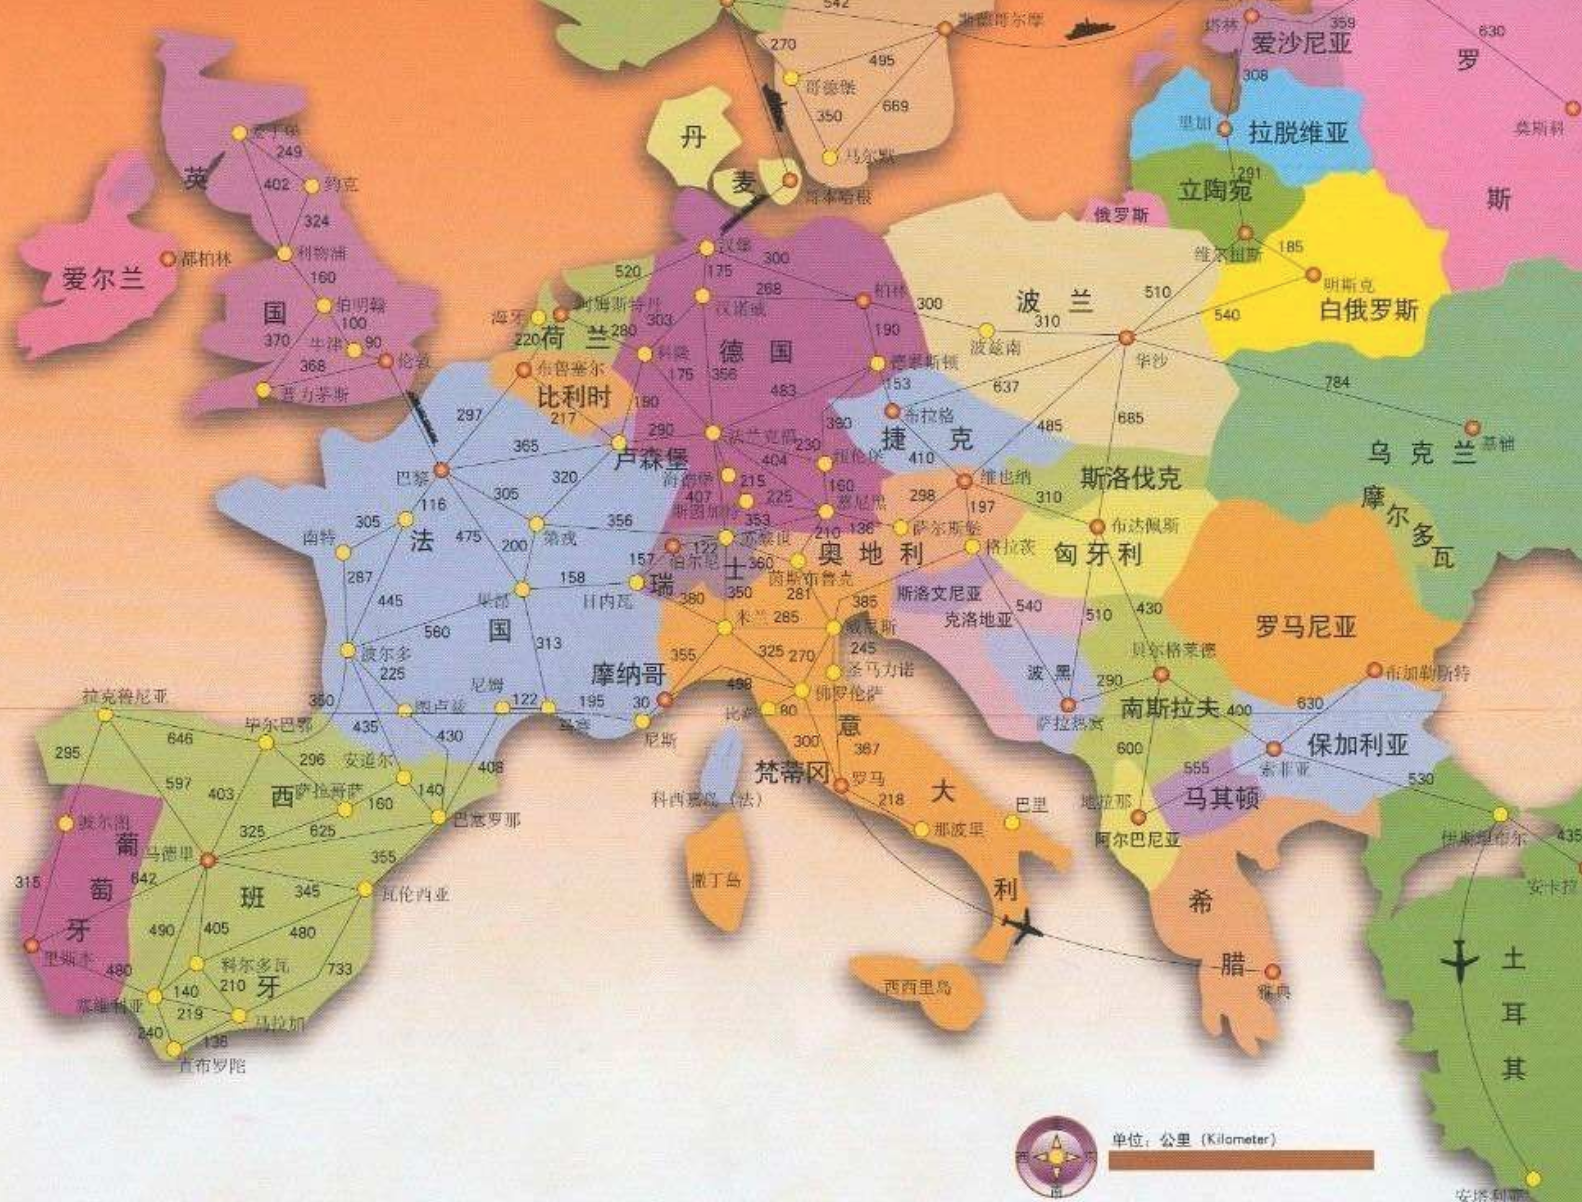 病毒击中后的意大利和与欧盟何去何从